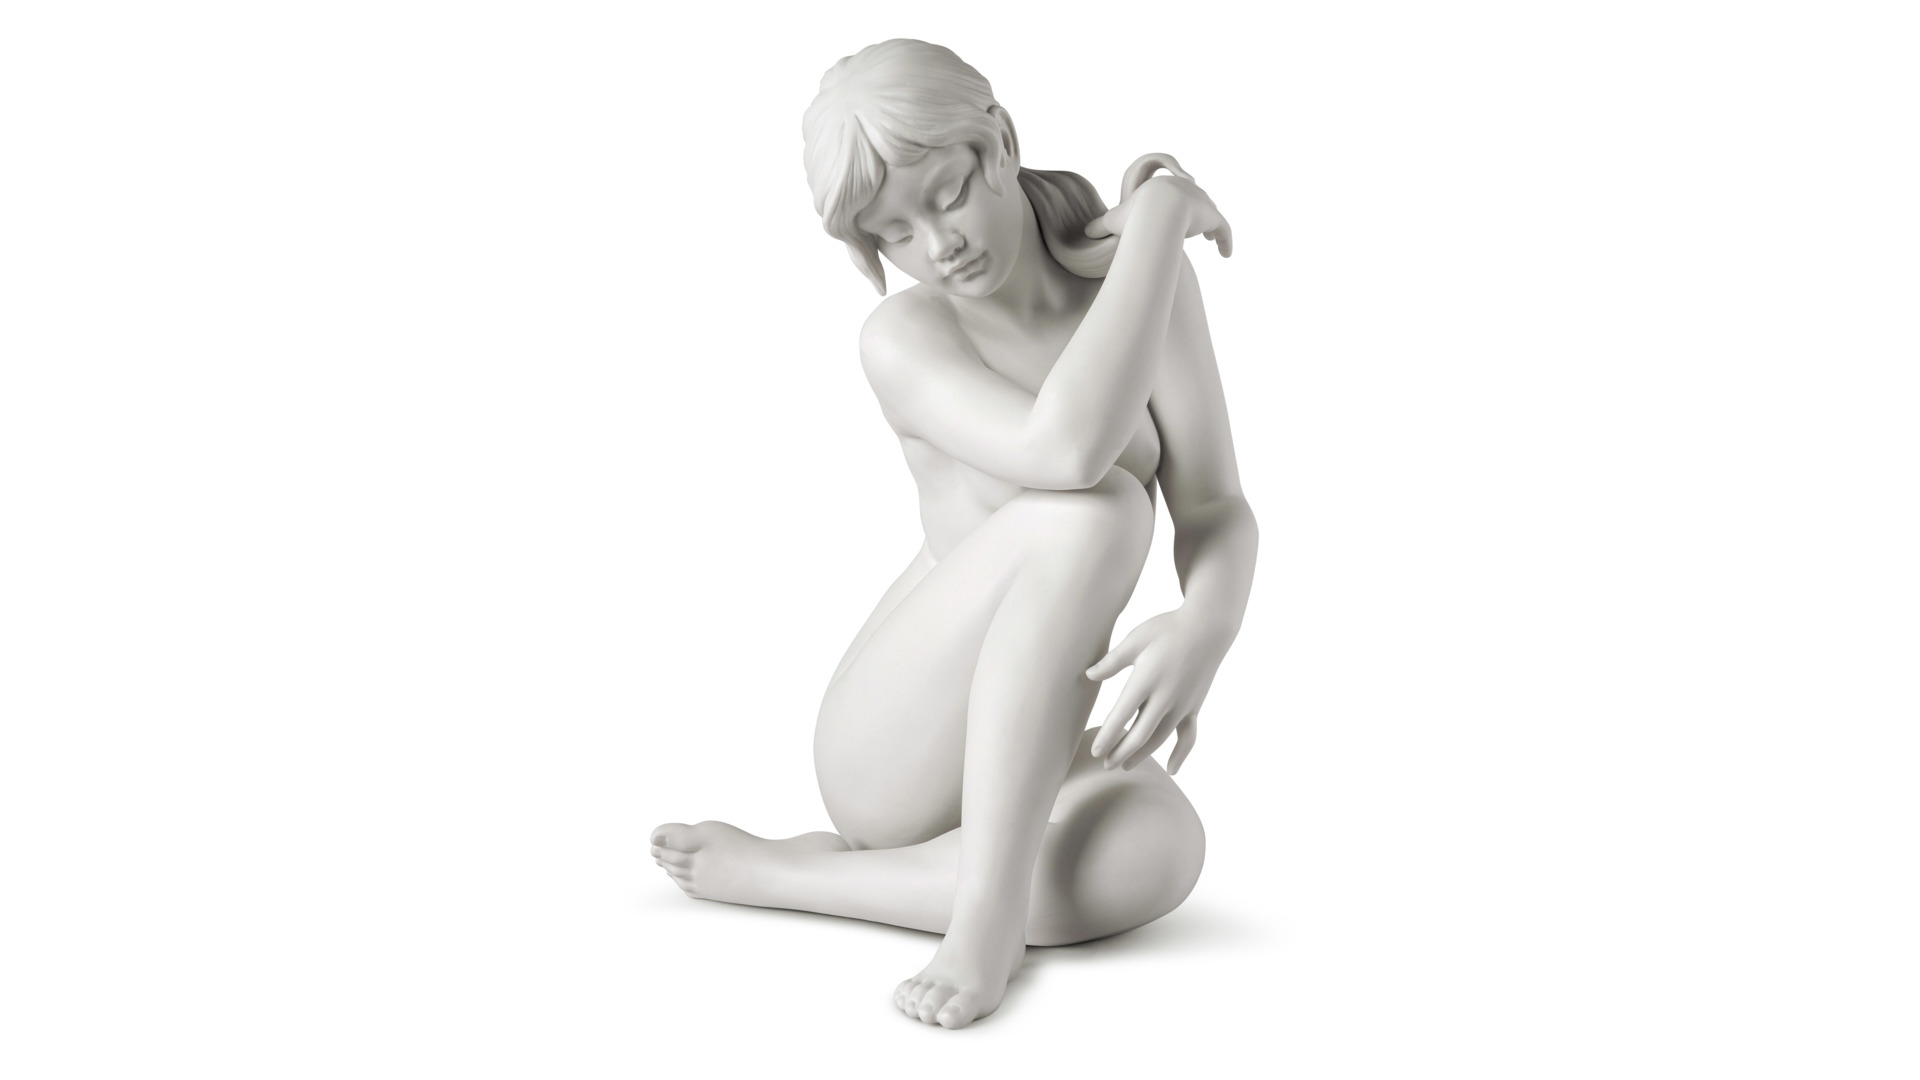 Фигурка Lladro Безмятежность 28х34 см, фарфор